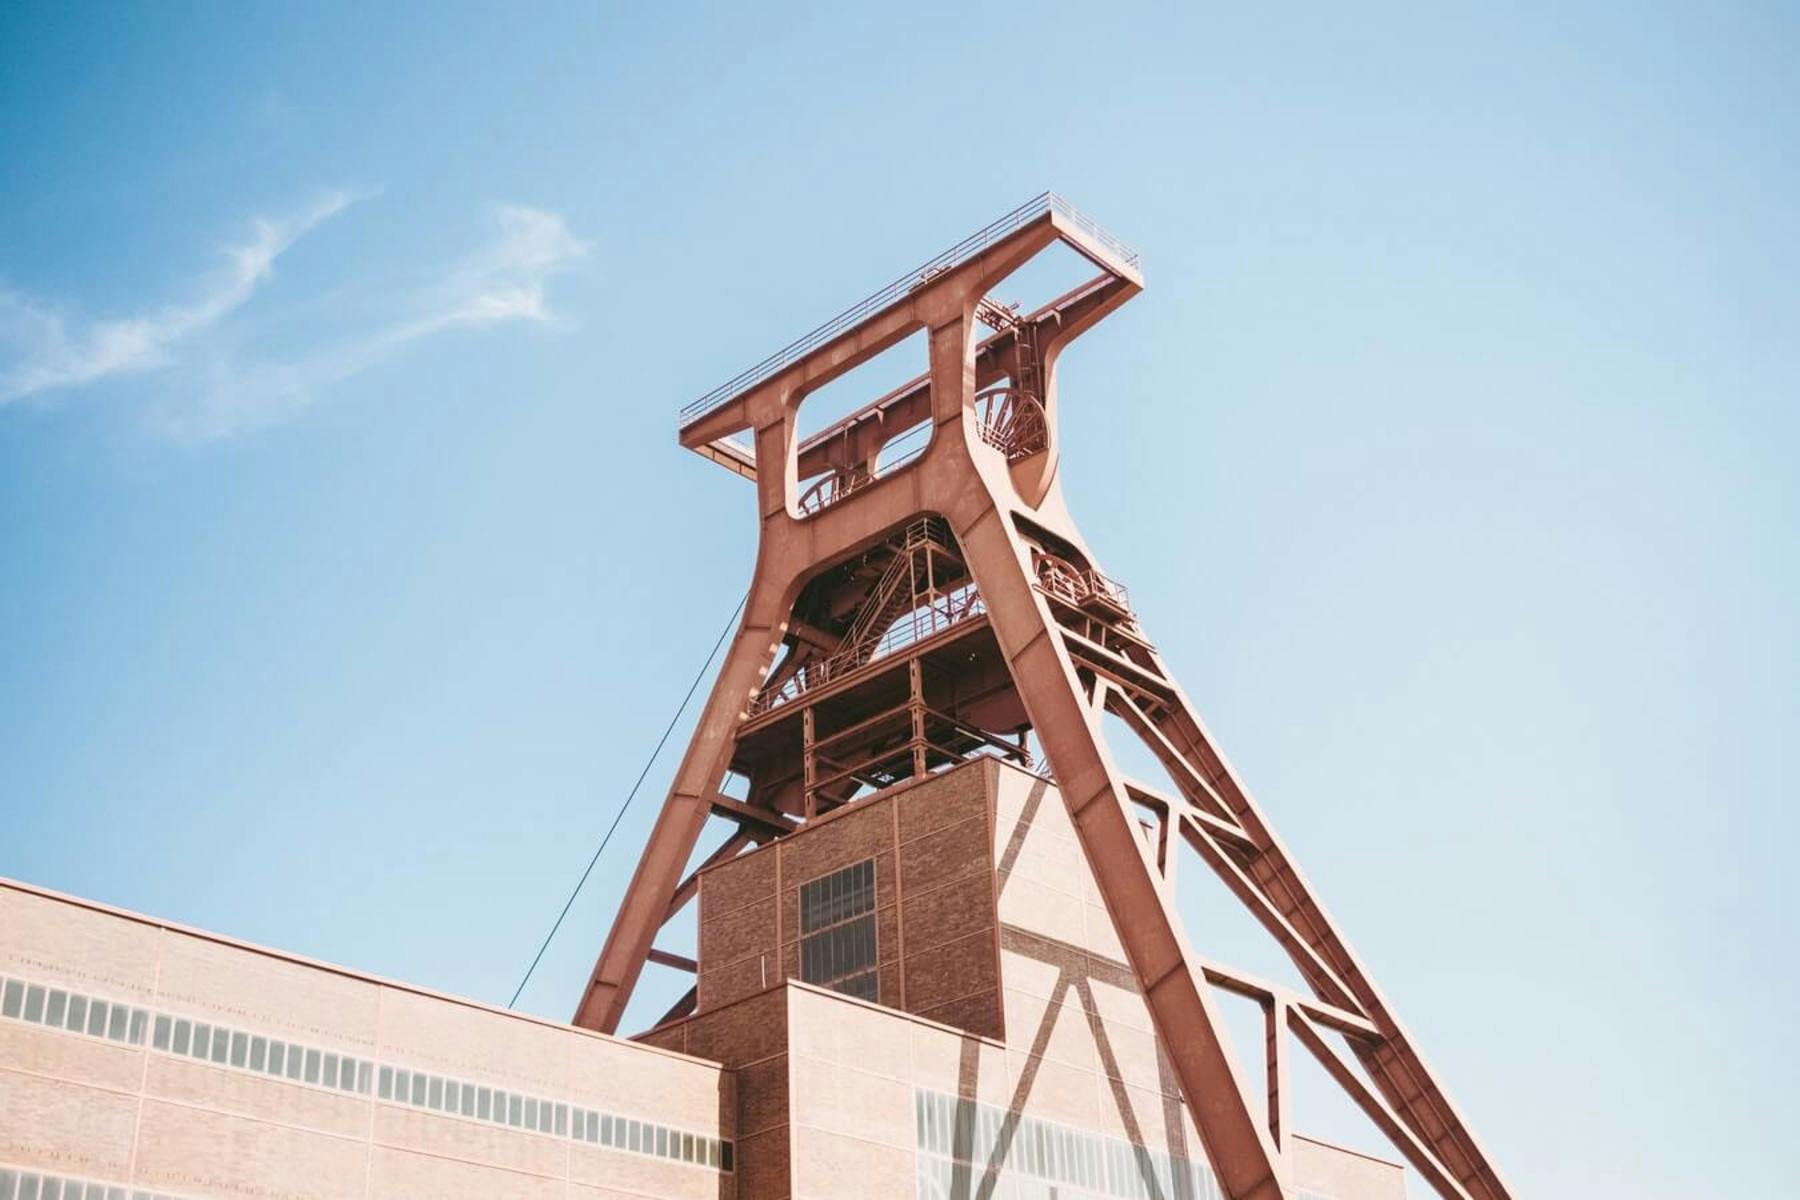 Sehenswürdigkeiten in Essen: Der Zeche Zollverein